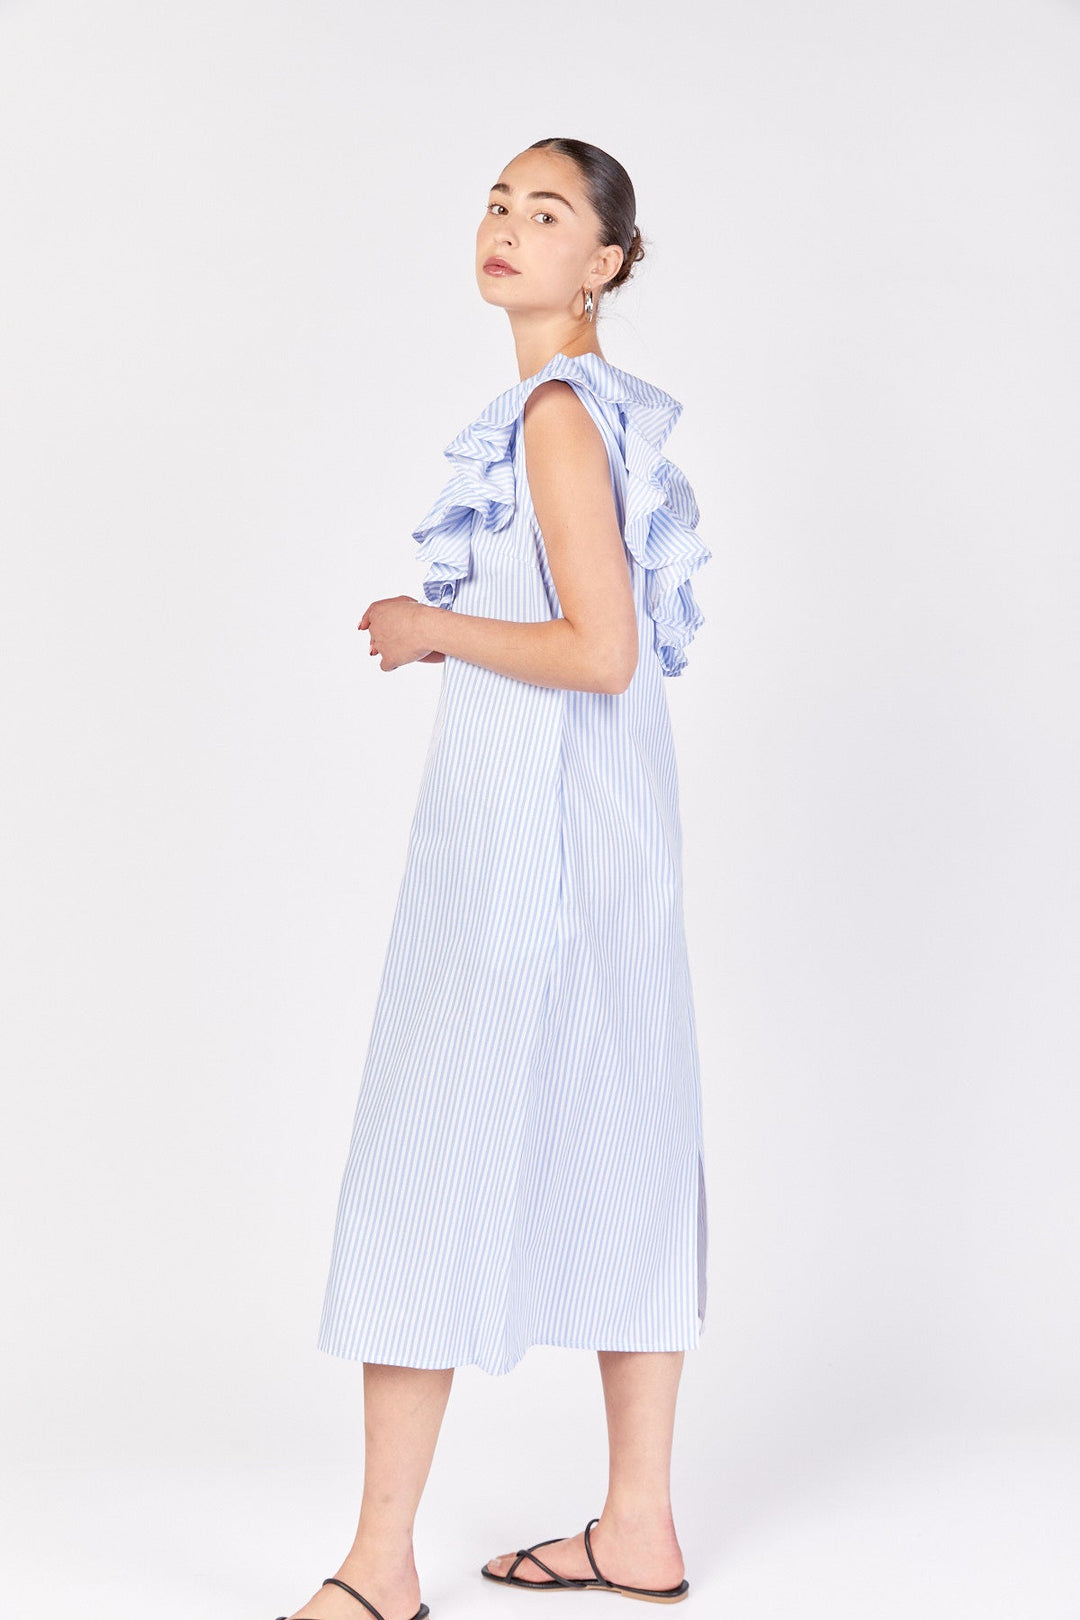 שמלת מידי רומא בפסים כחול לבן - Razili Studio